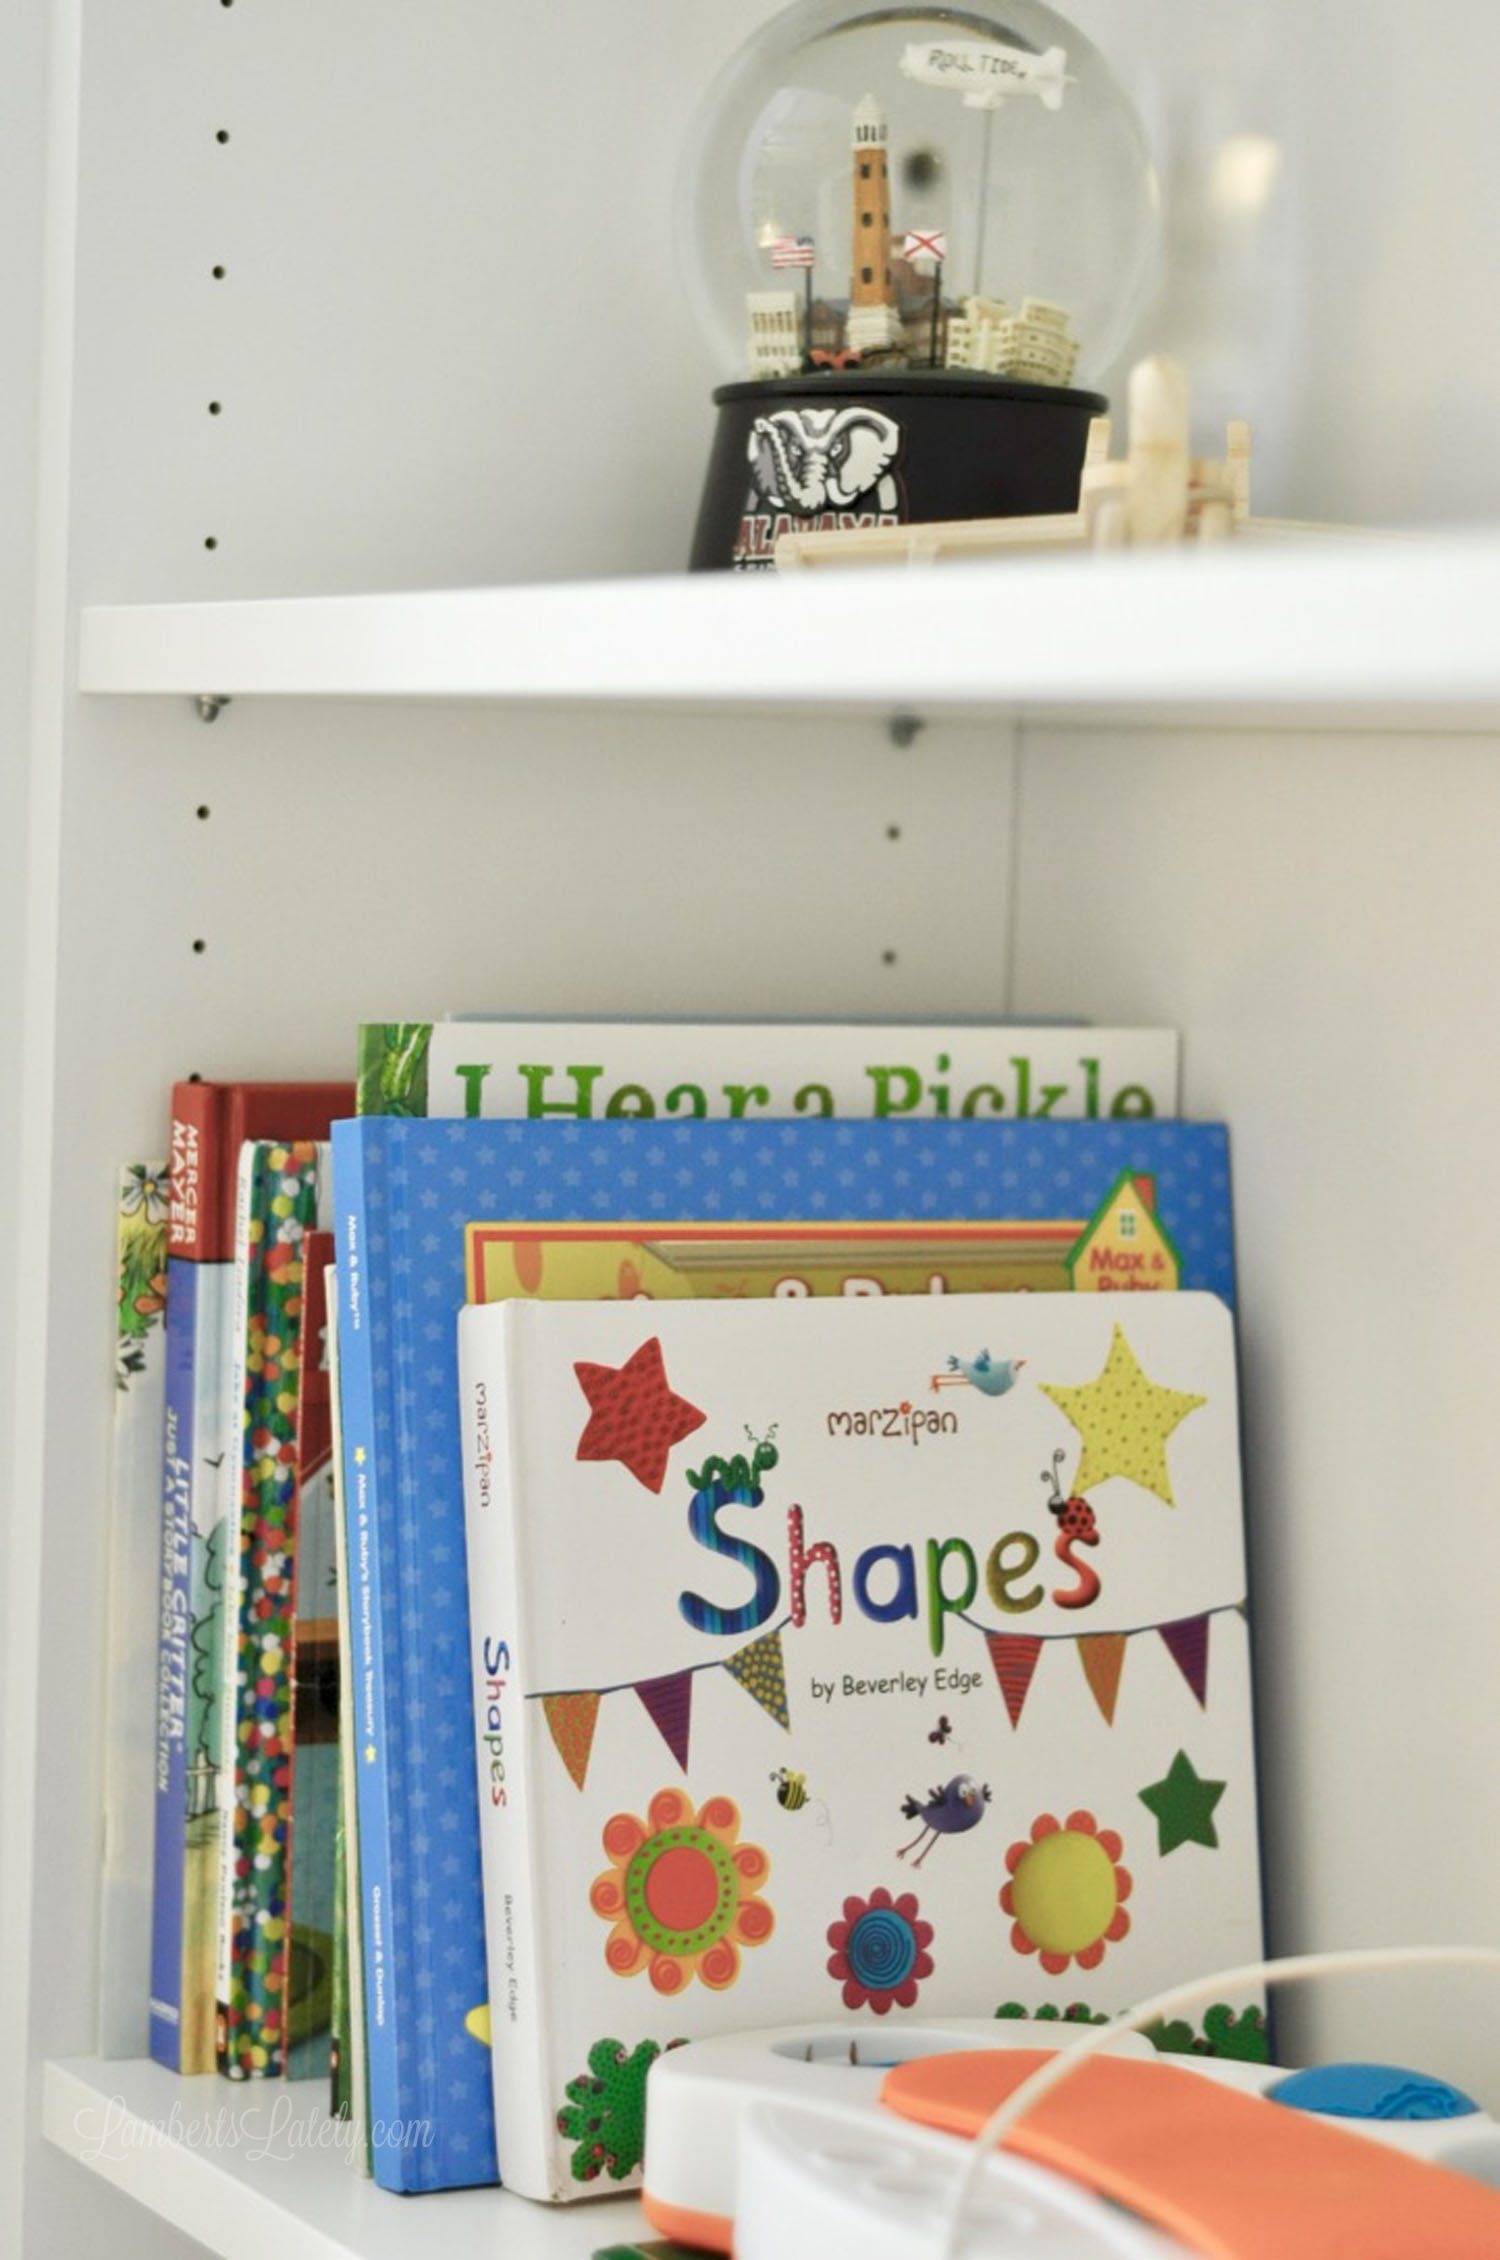 books and a snow globe on a shelf